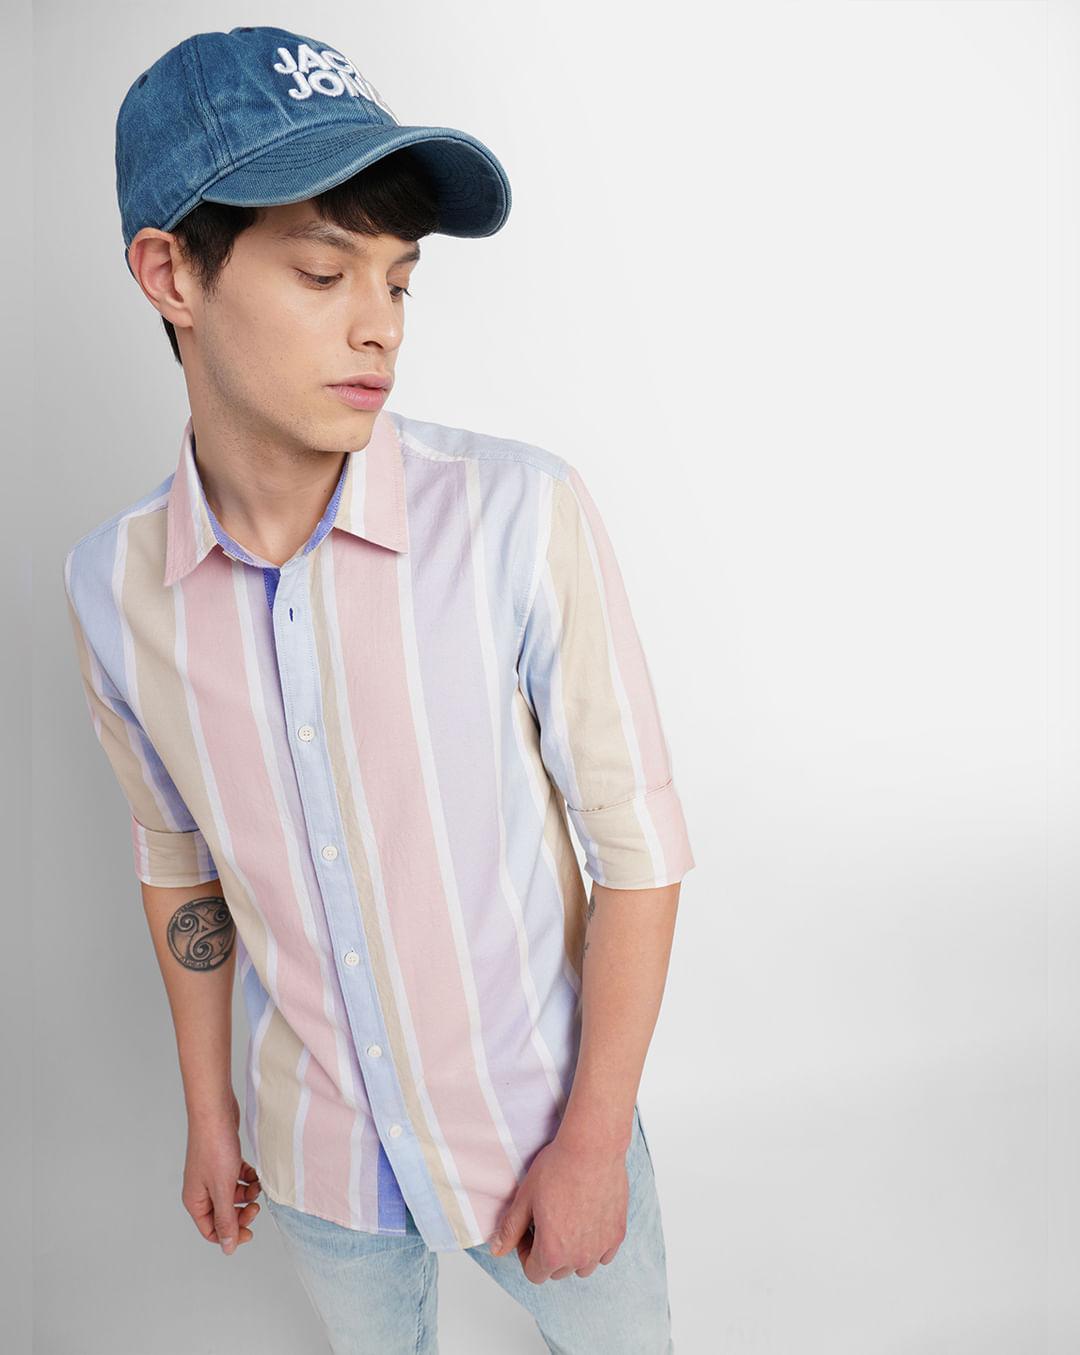 white-striped-full-sleeves-shirt